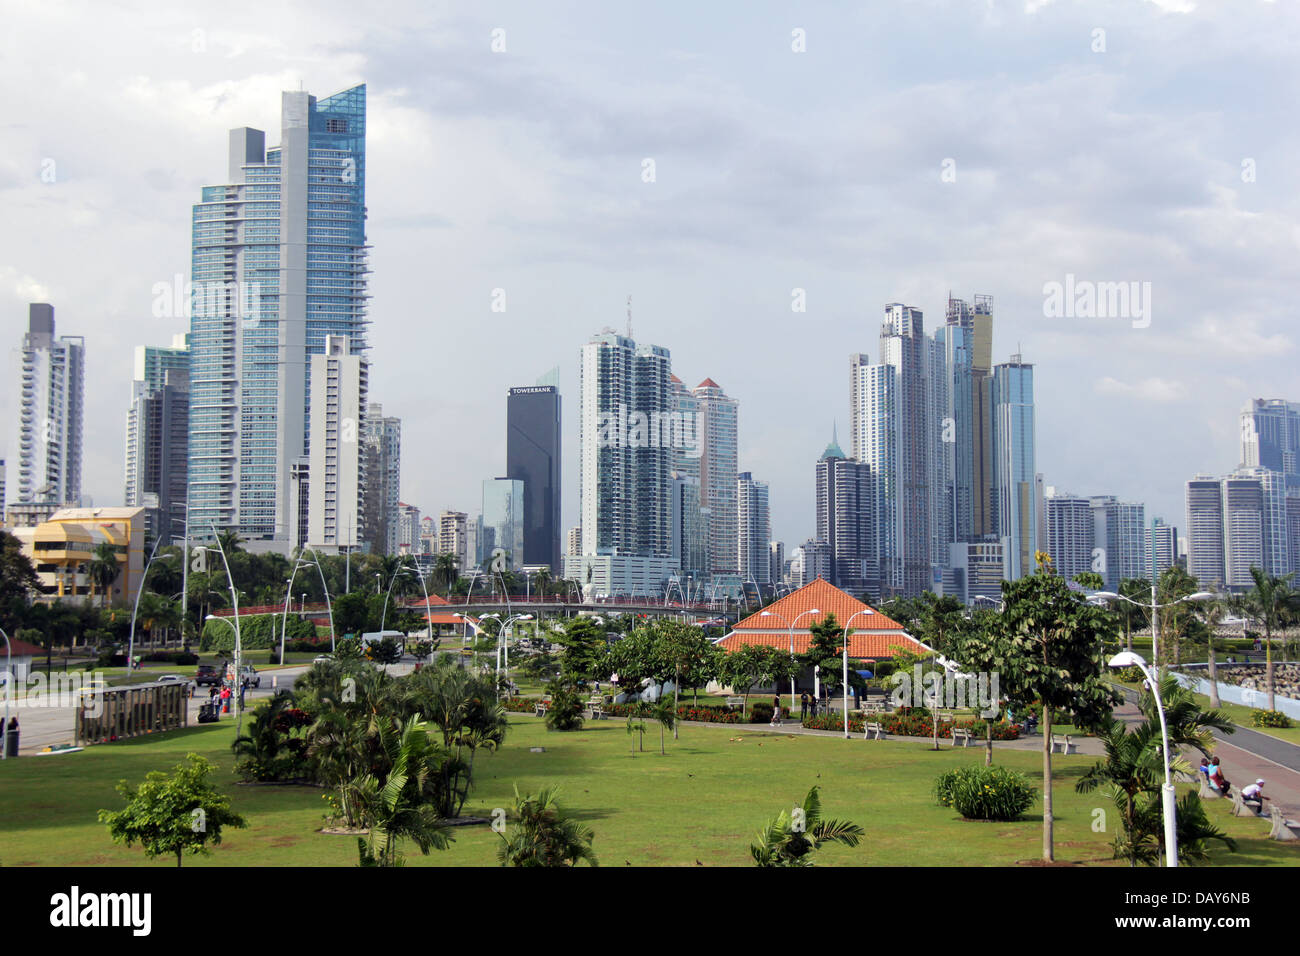 Skyline della Città di Panama, Panama. Grattacieli moderni alla cinta Costera-Balboa Avenue e di prezzo elevato patrimonio immobiliare appartamenti. Foto Stock